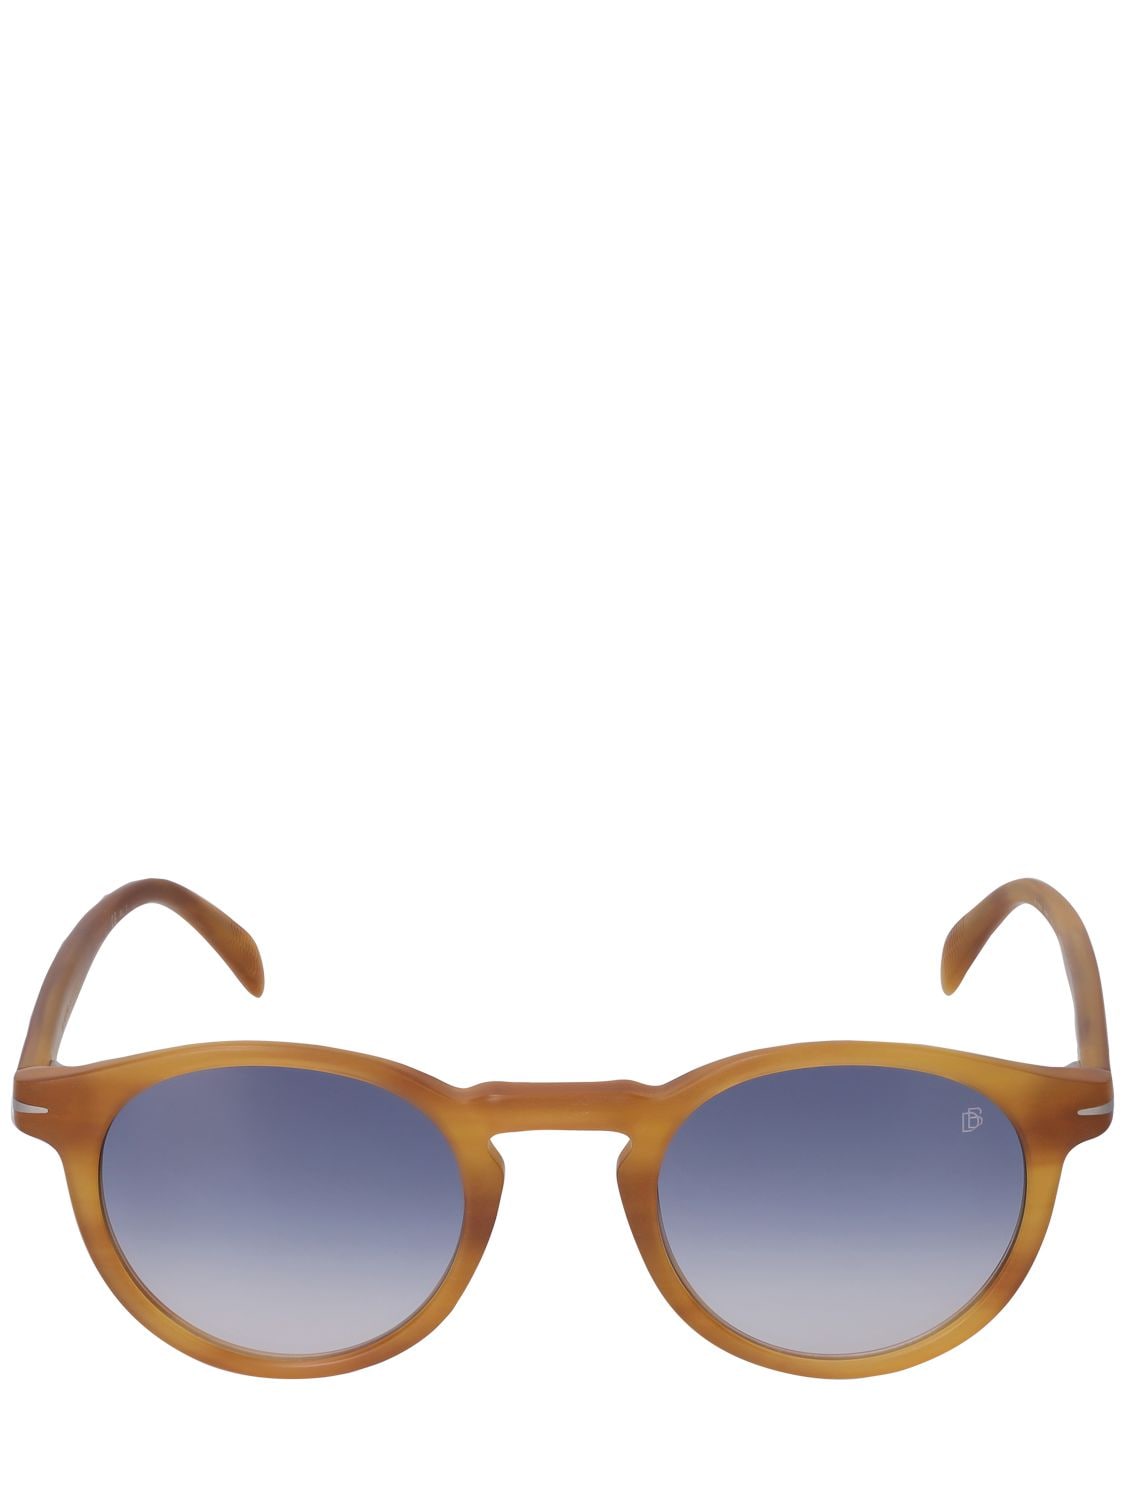 Image of Db Round Acetate Sunglasses